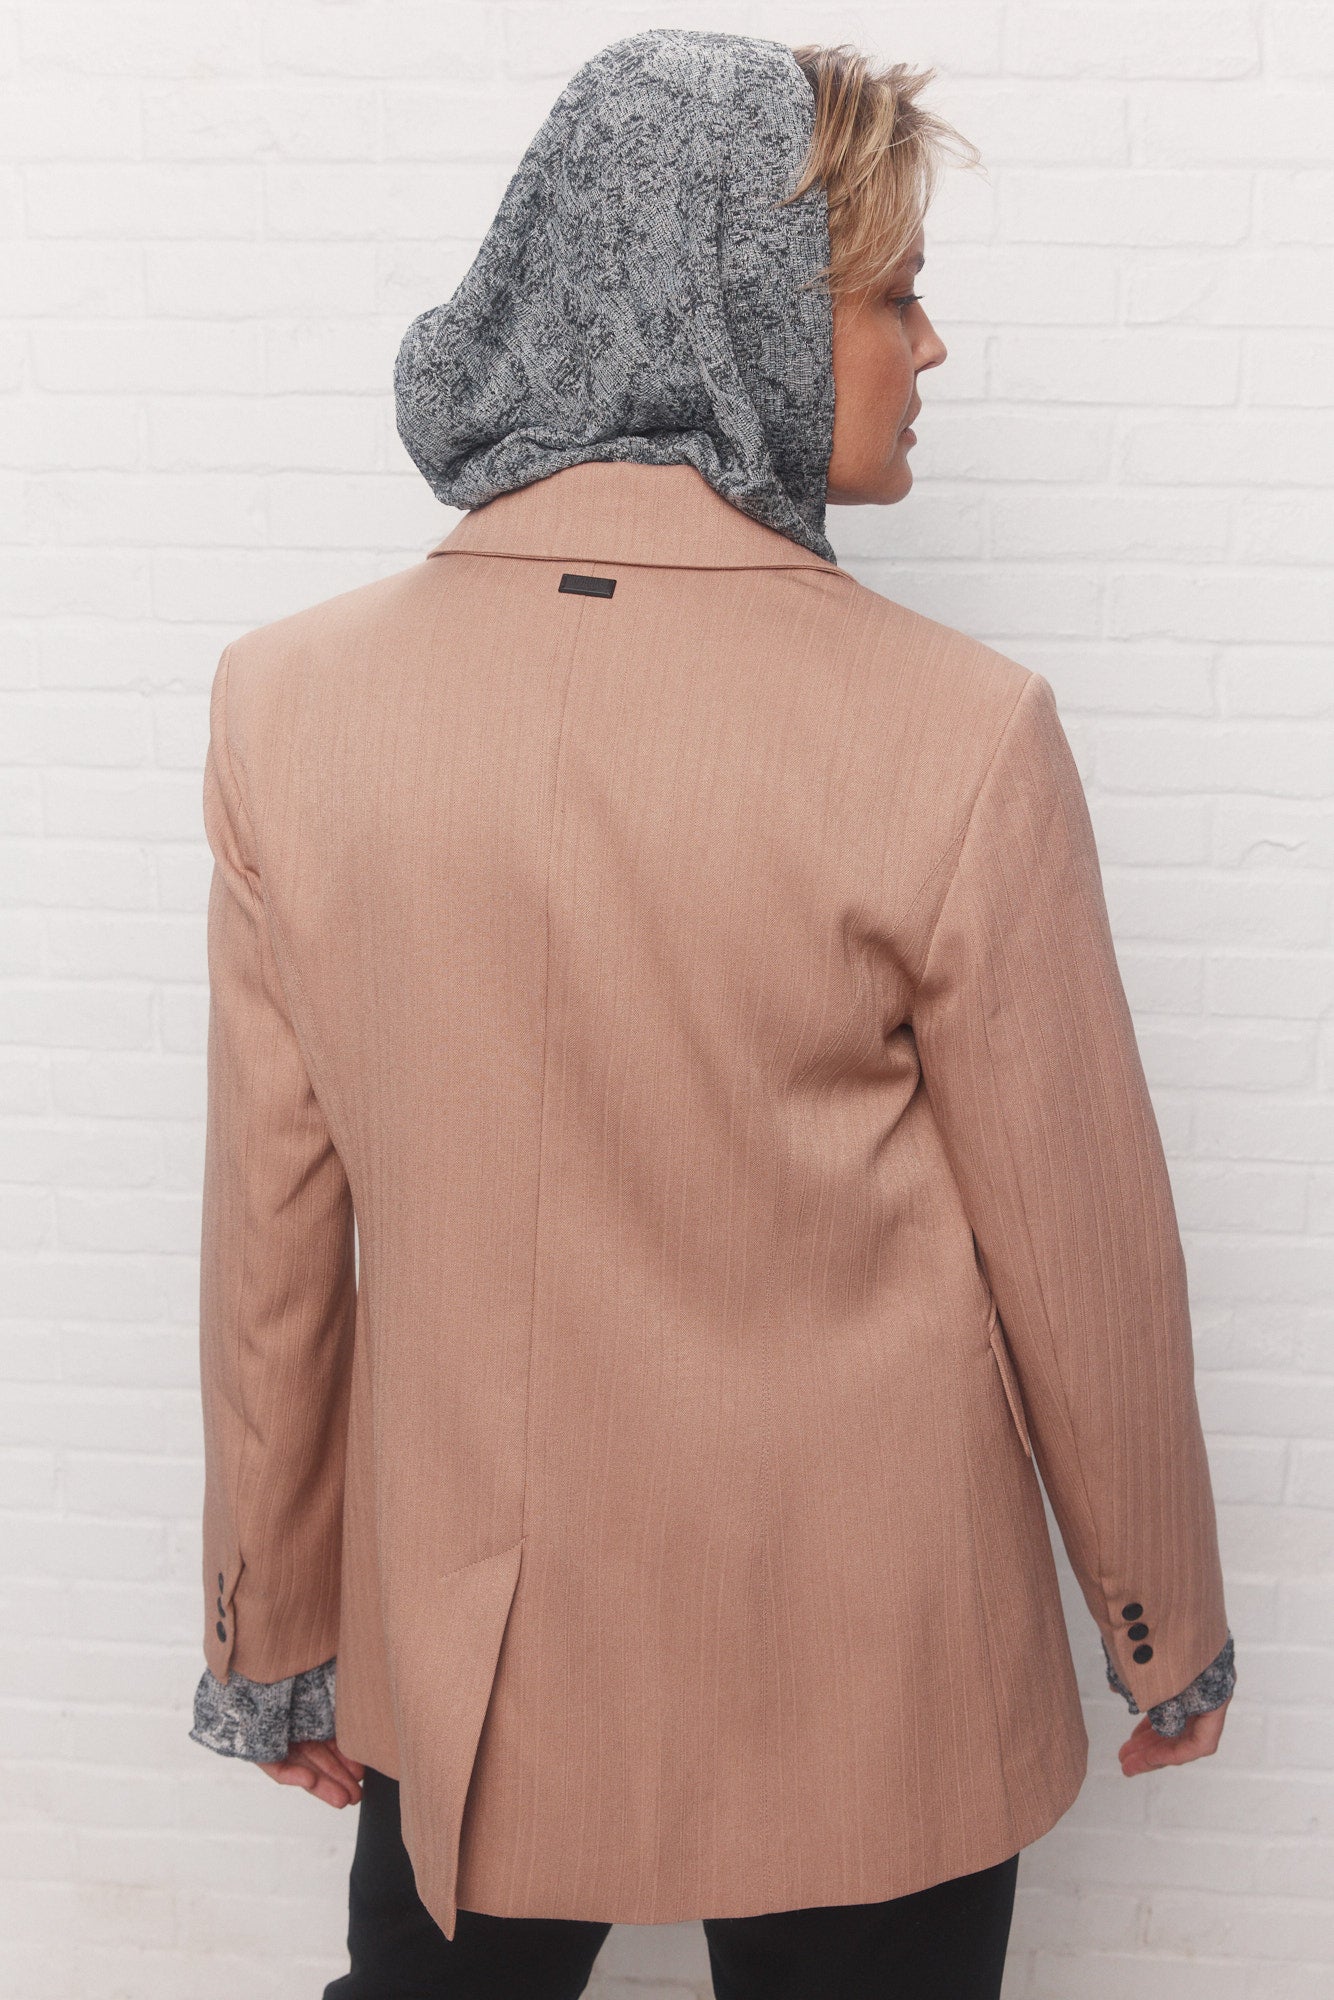 Veston marron pâle semi-ajusté | Owens JOELLE Collection